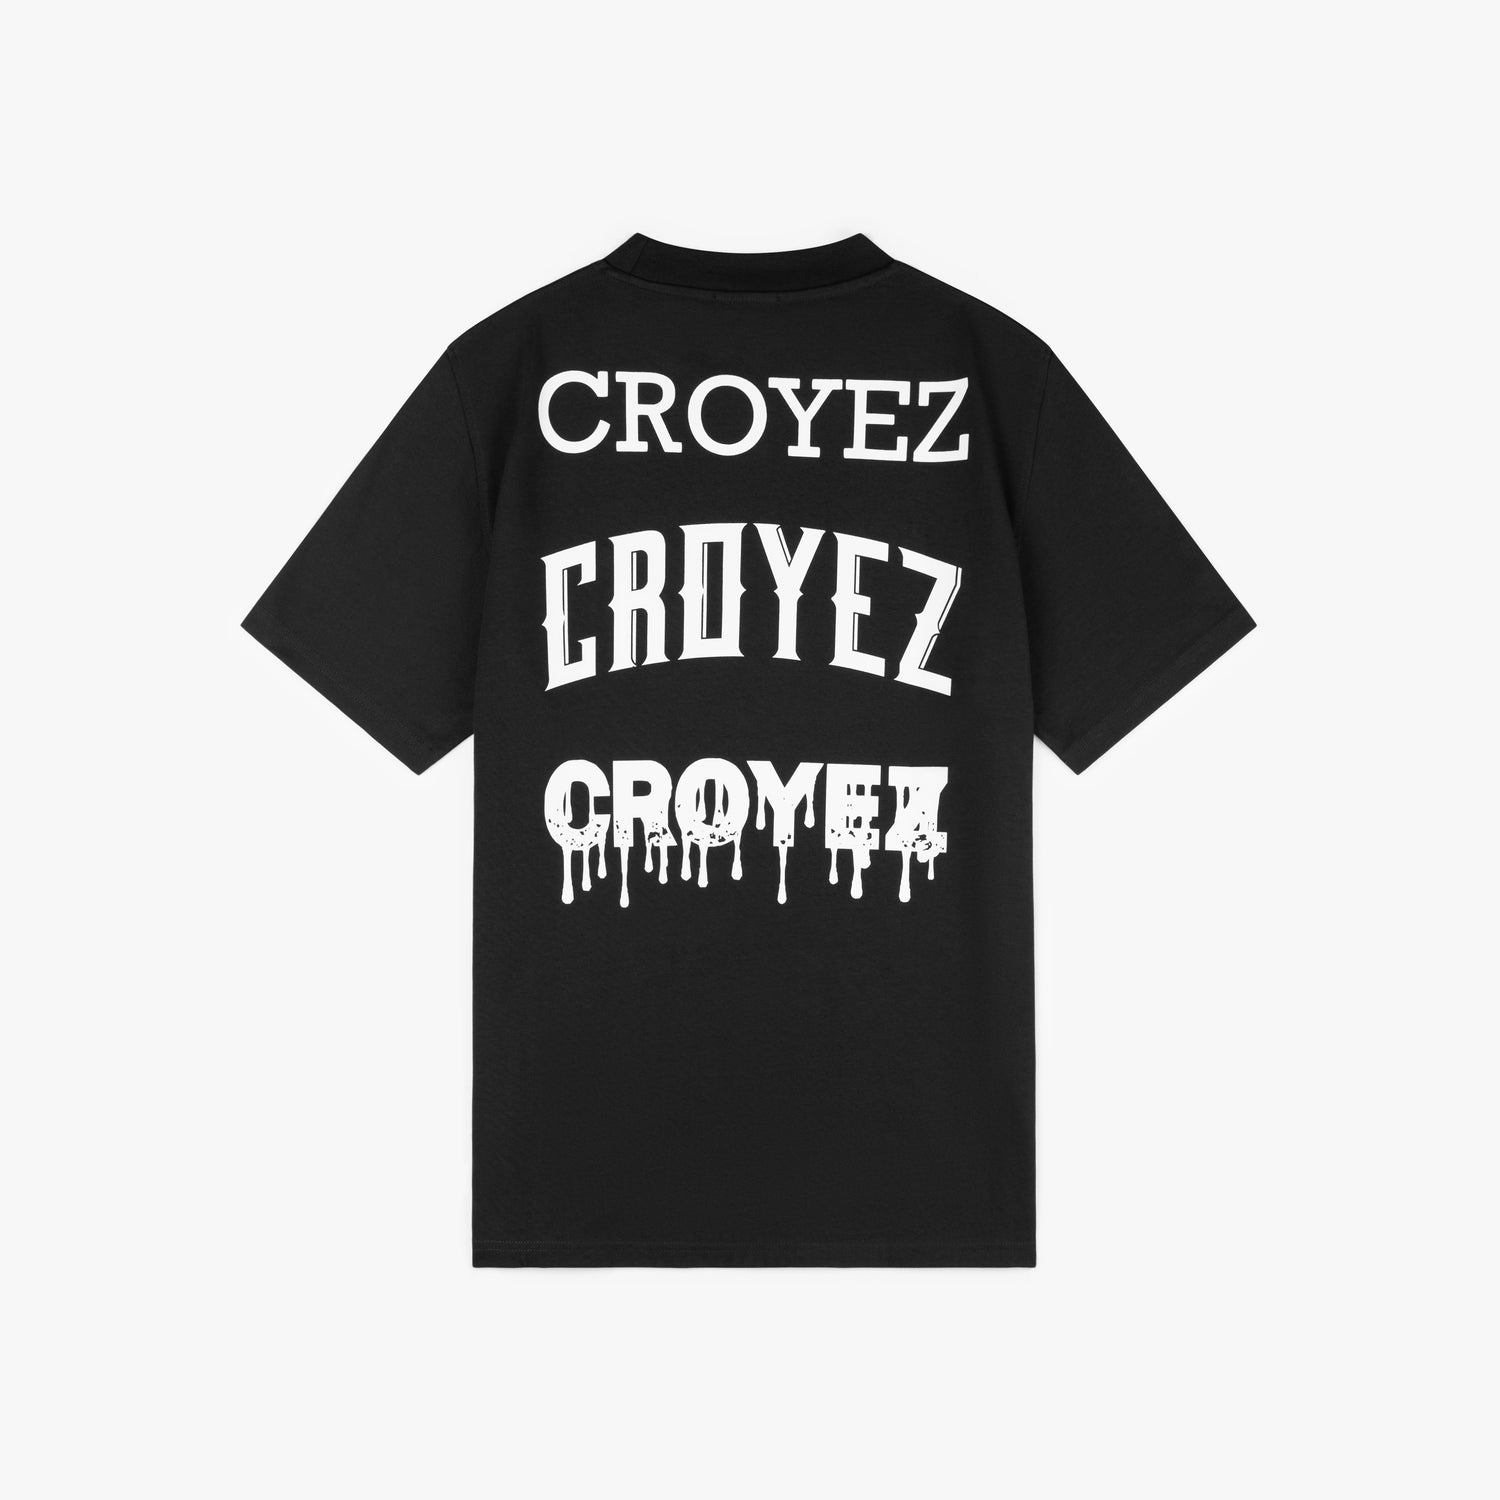 CROYEZ STACKED LOGO T-SHIRT - BLACK/WHITE